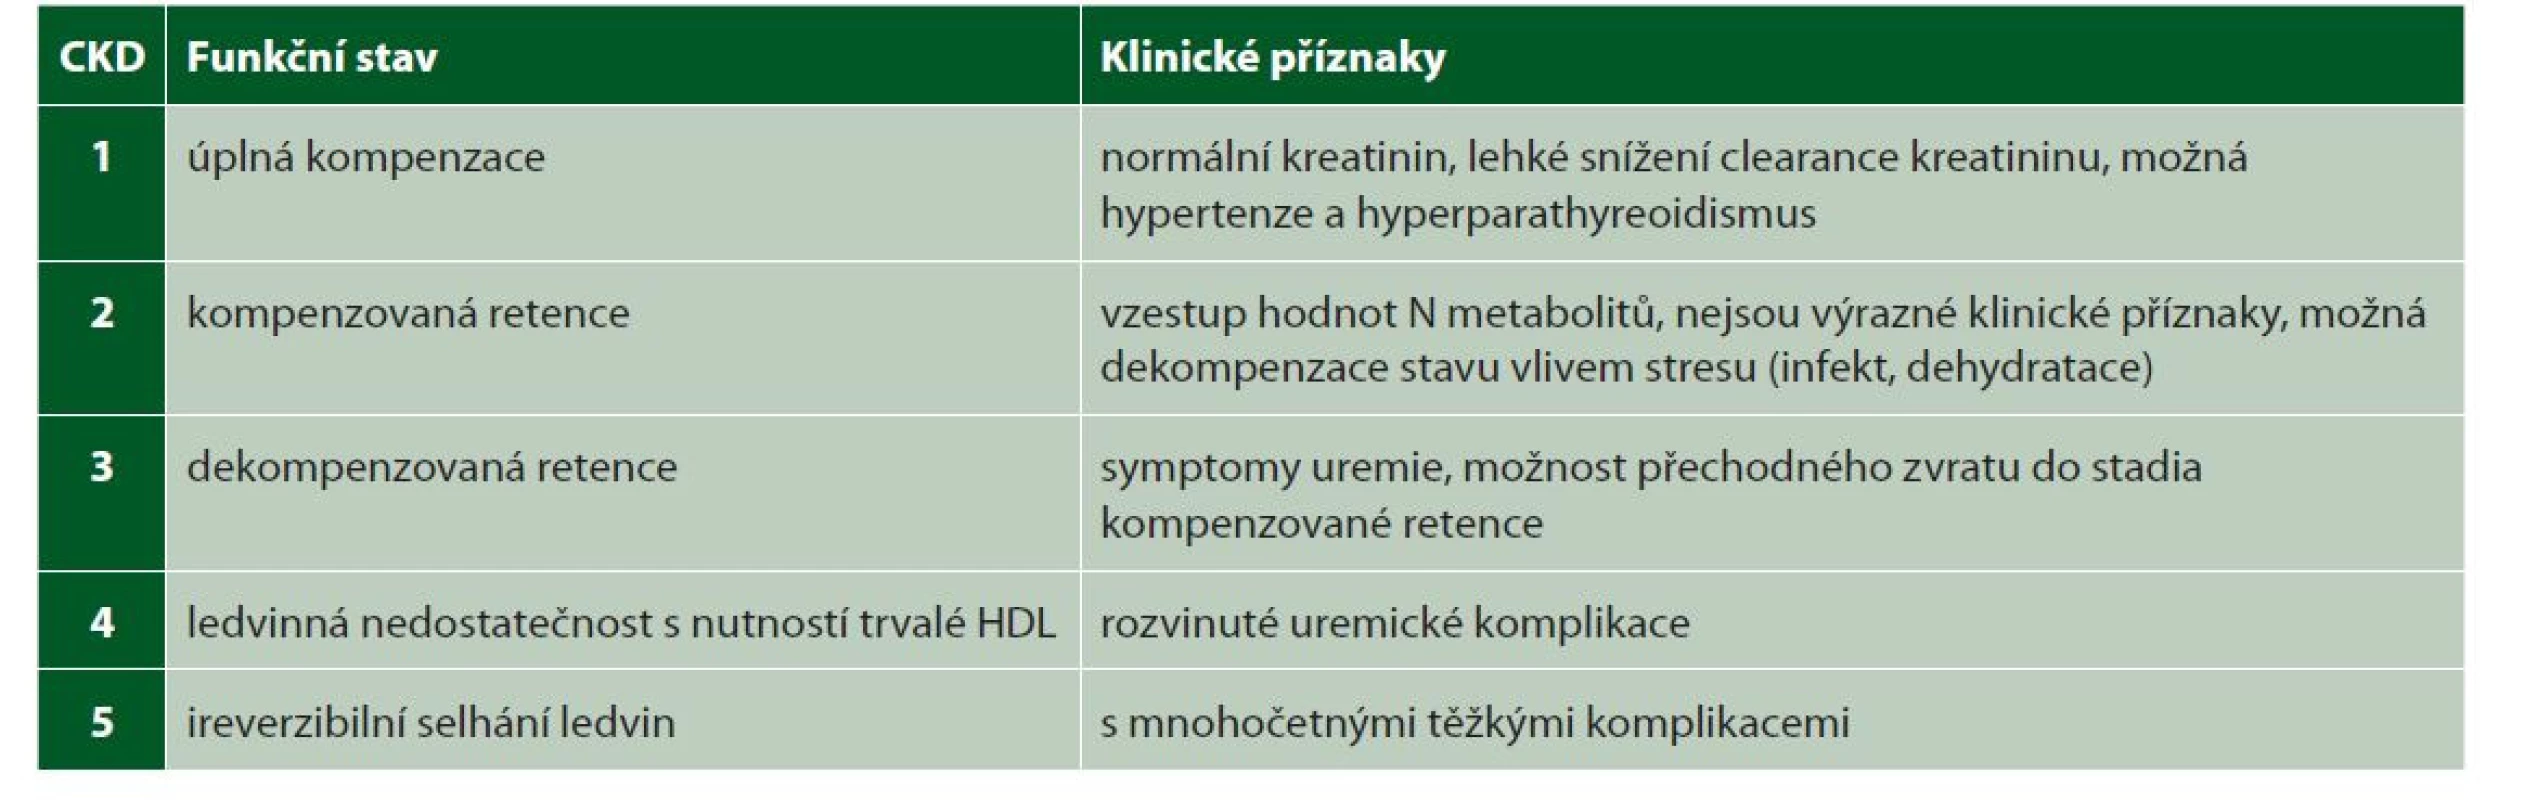 Stadia CHRI – CKD (chronic kidney disease)